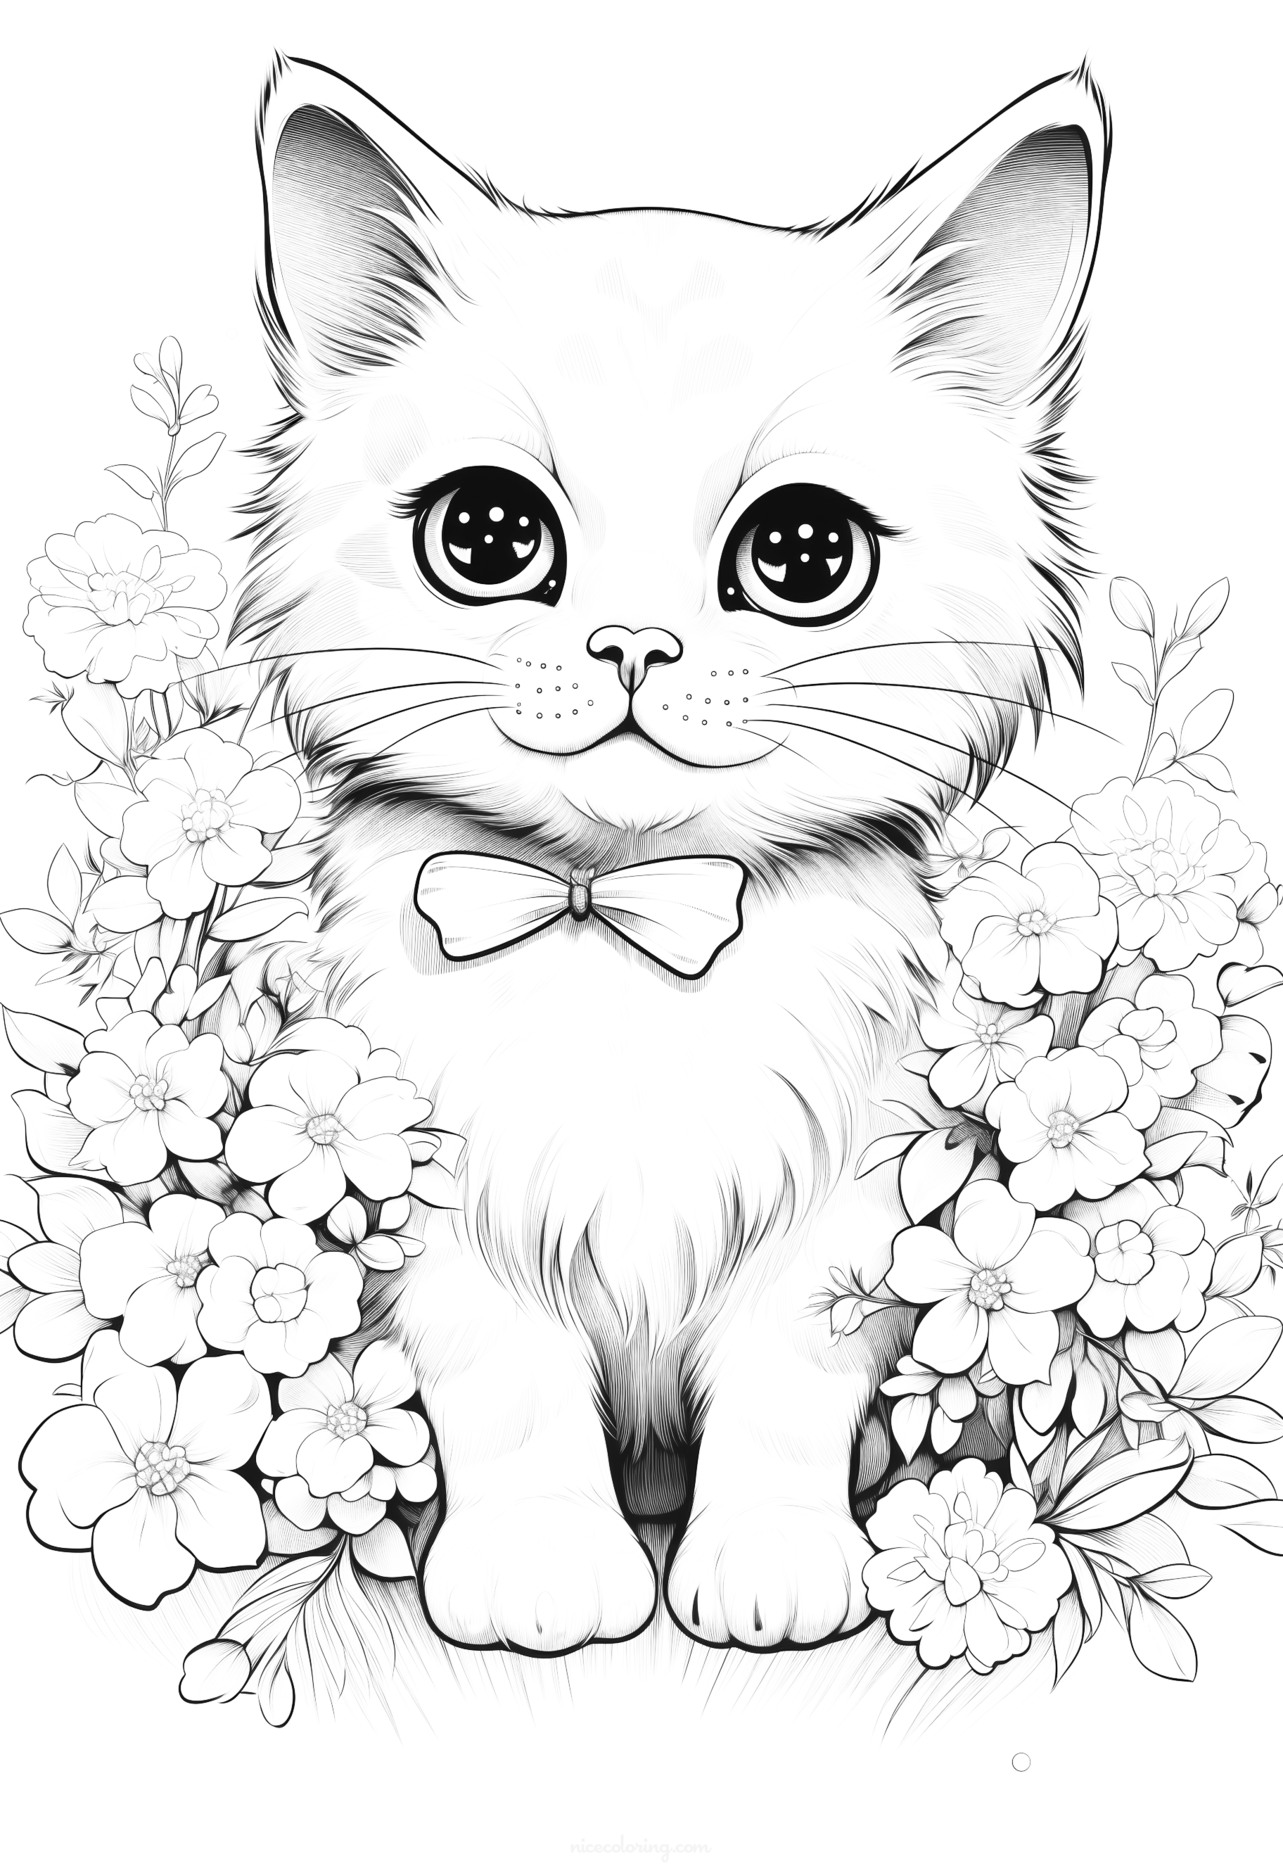 एक खेलती हुई प्यारी बिल्ली का रंगने का चित्र